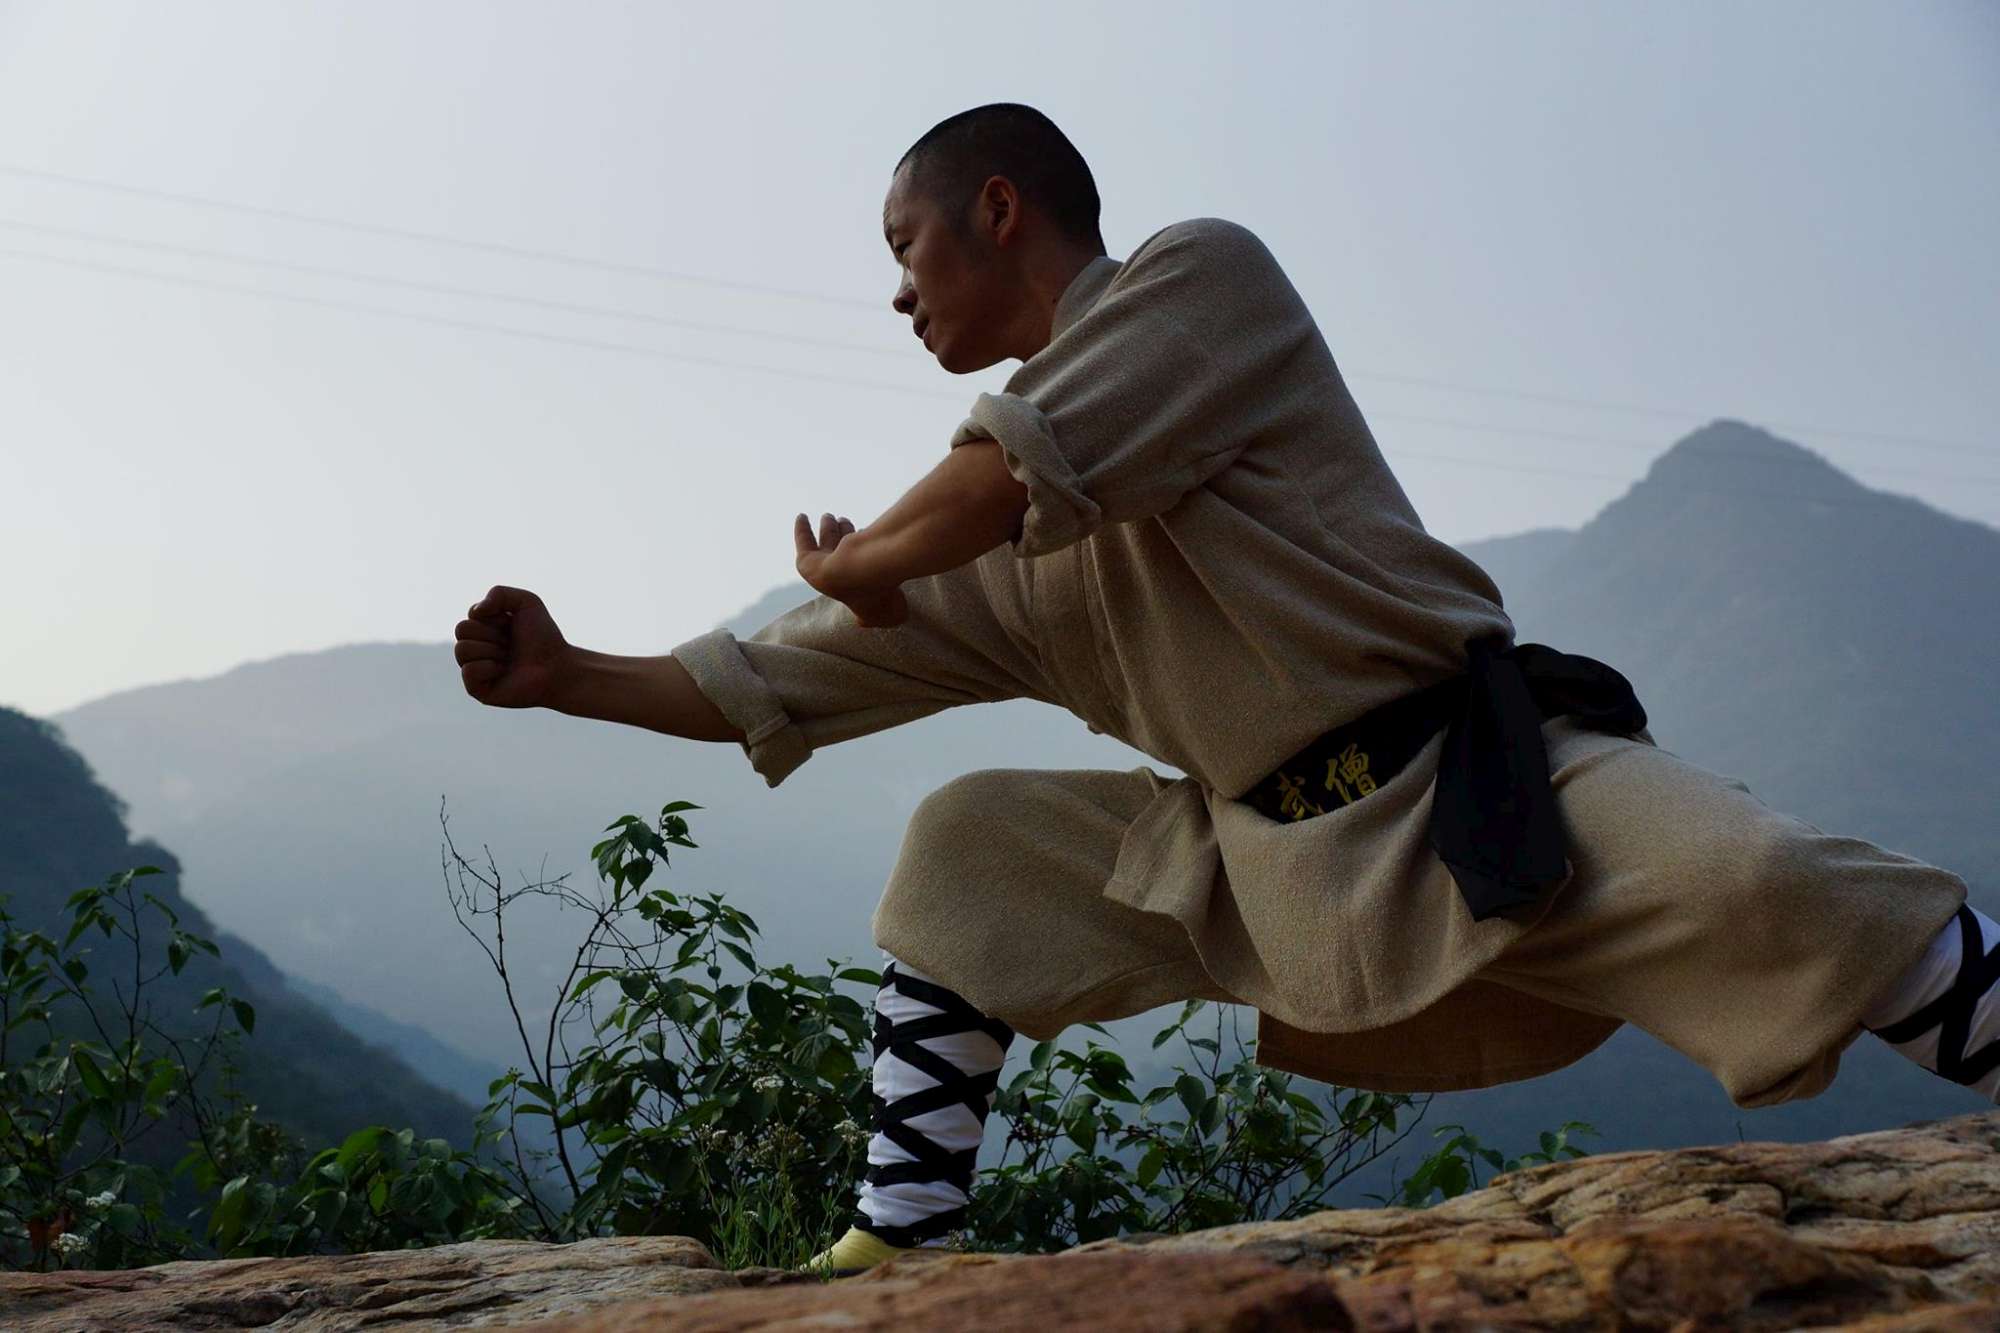 Shaolin la nuova frontiera del benessere che è di aiuto contro la depressione